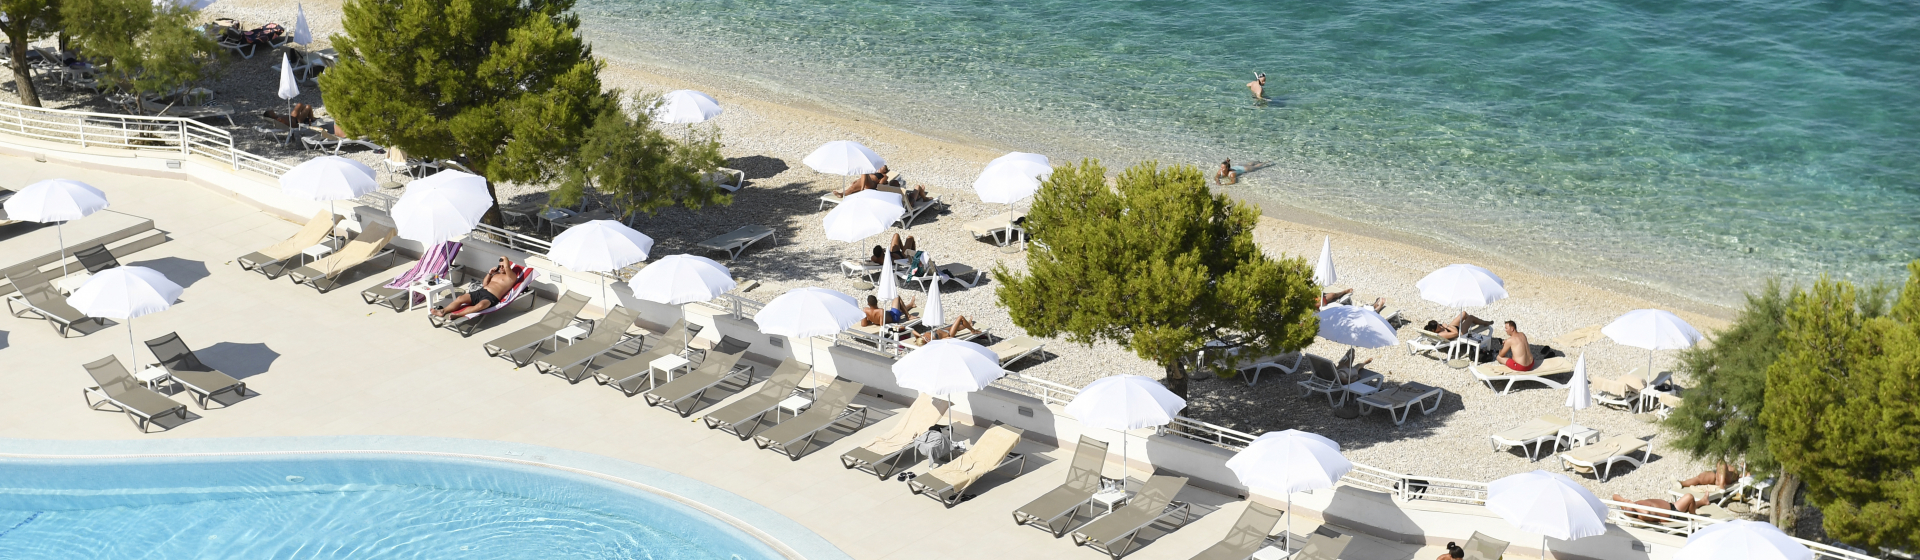 SPU0721__AC111621339_TB_Croatia_Adriatic_Beach_Hotel_pool_and_beach_overview